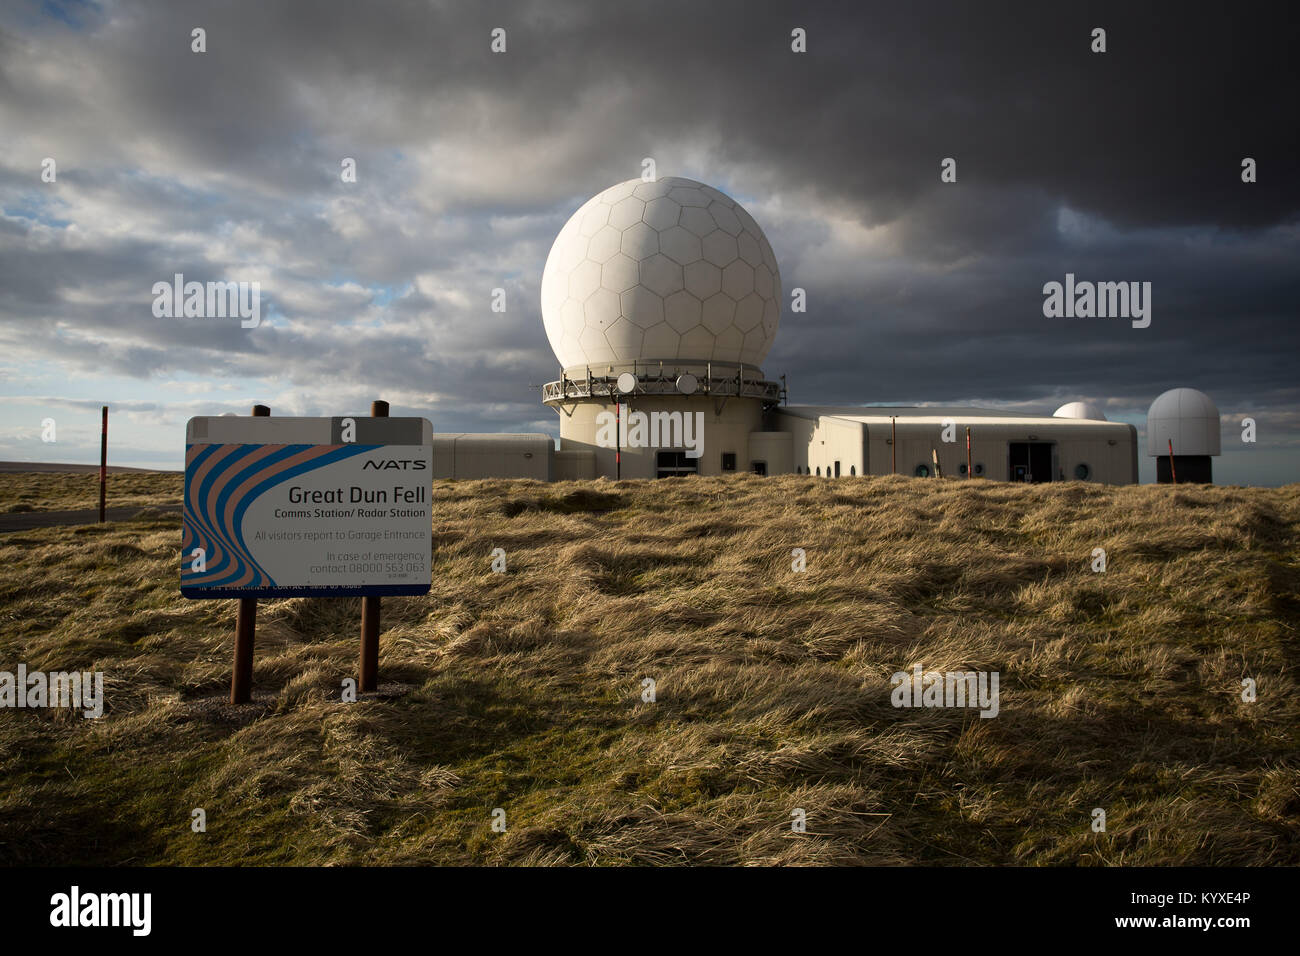 Nuages de tempête de recueillir au cours de la National Air Traffic Services Centre de Contrôle Radar à grande Dun Fell, Cumbria Banque D'Images